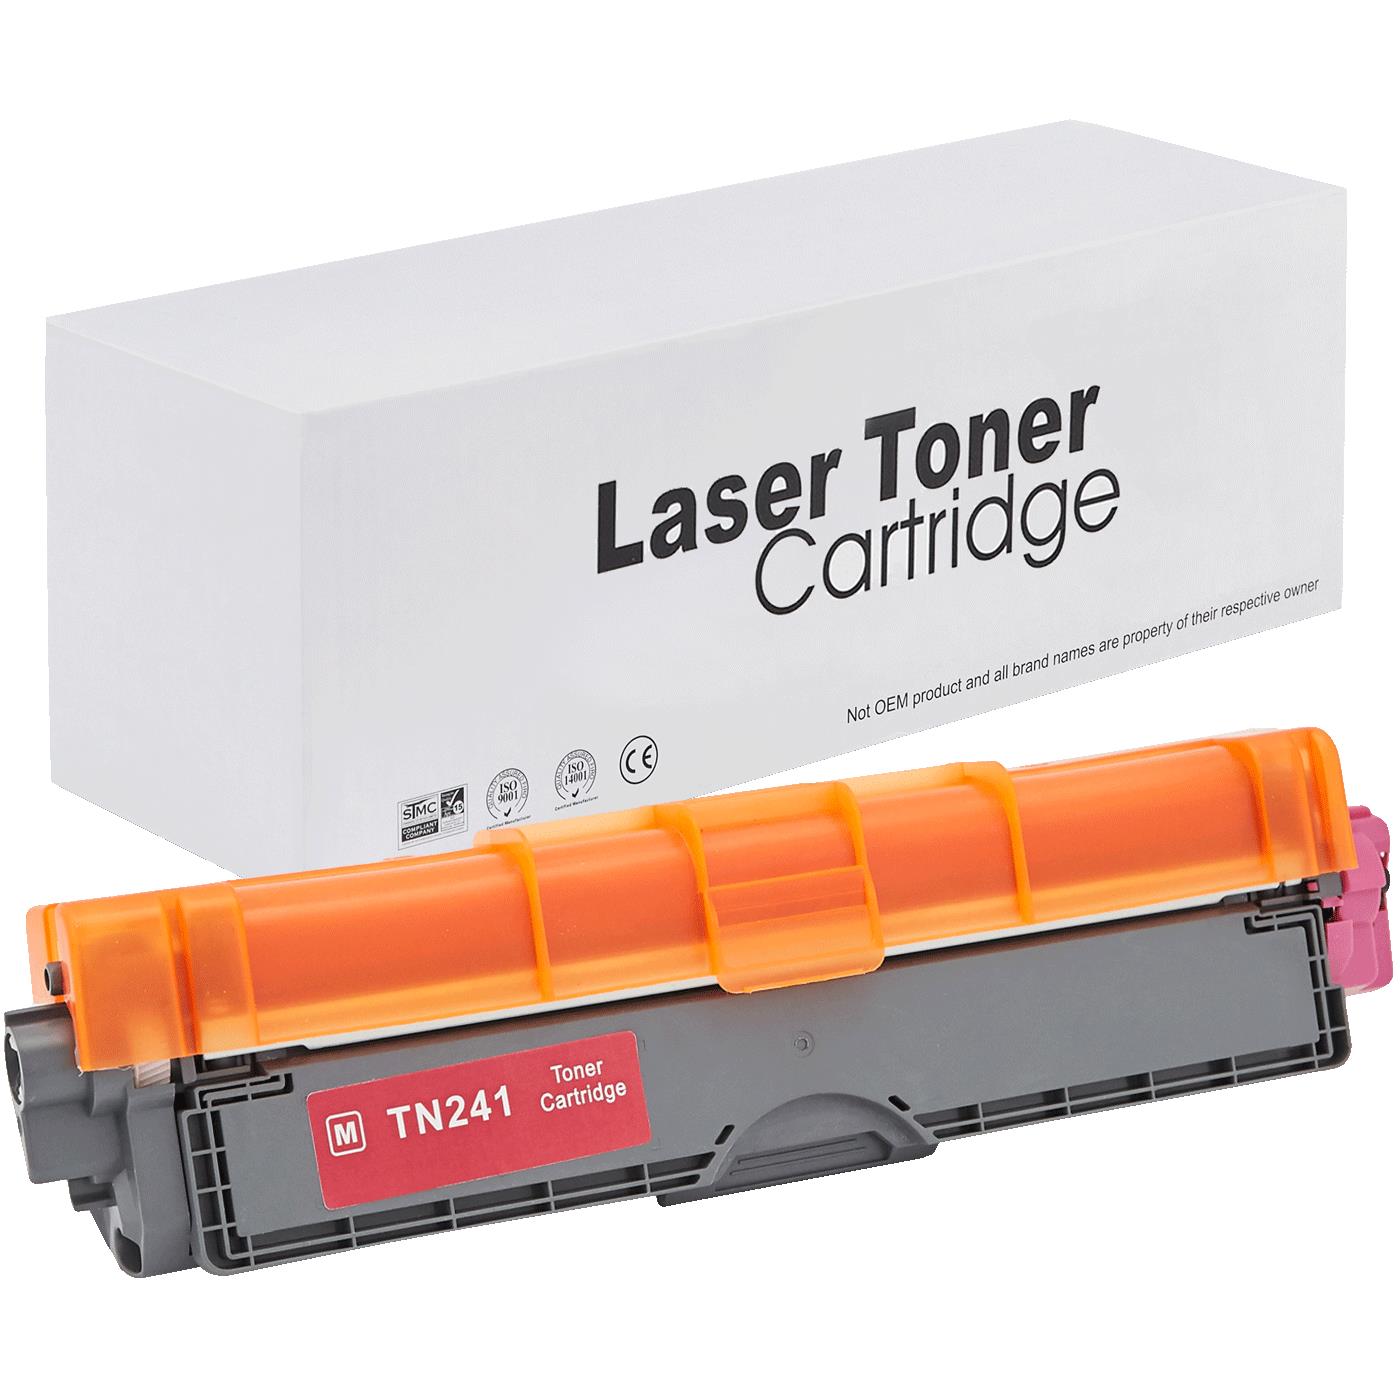 съвместима тонер касета за принтери и печатащи устройства на Brother HL-3140 CW Toner BR-241M | TN241M. Ниски цени, прецизно изпълнение, високо качество.